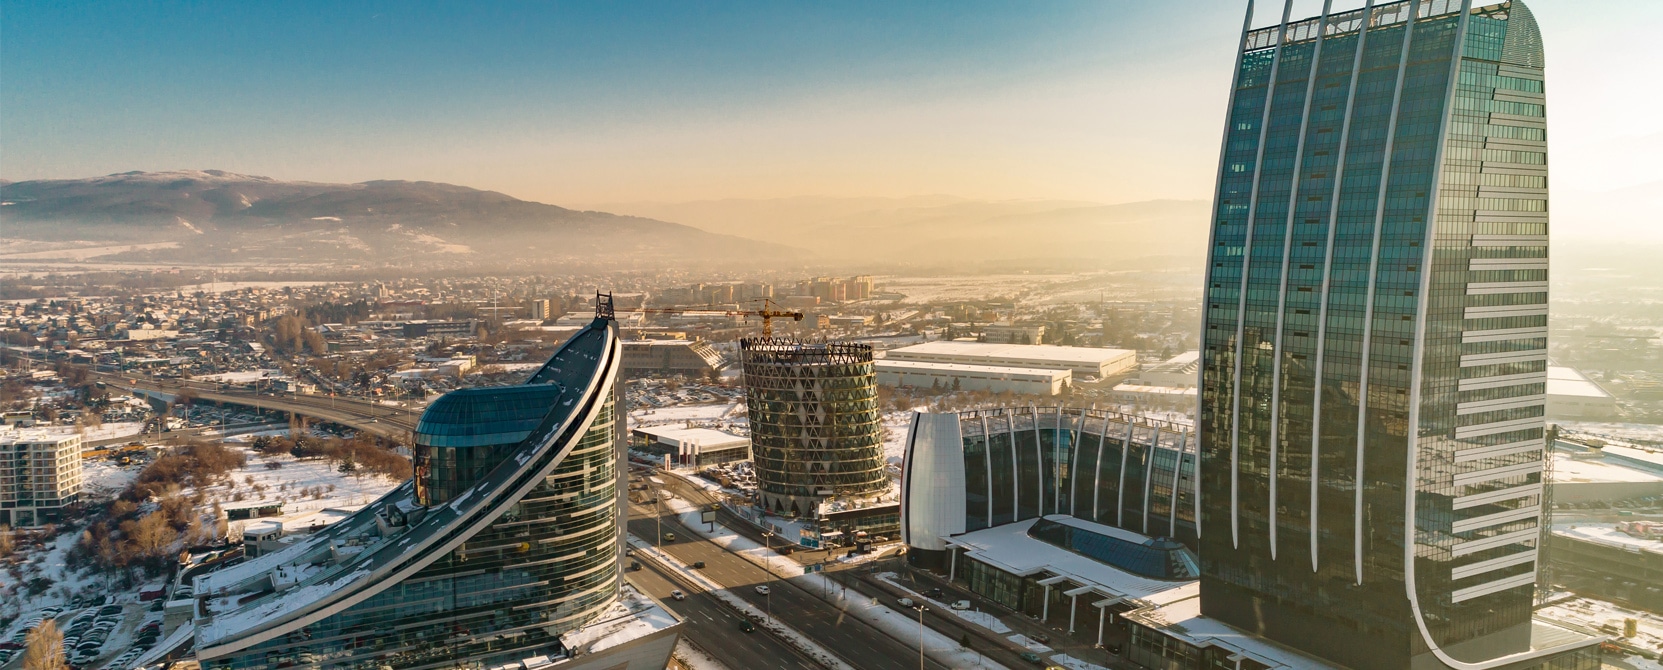 Neues Terminal in Sofia eingeweiht